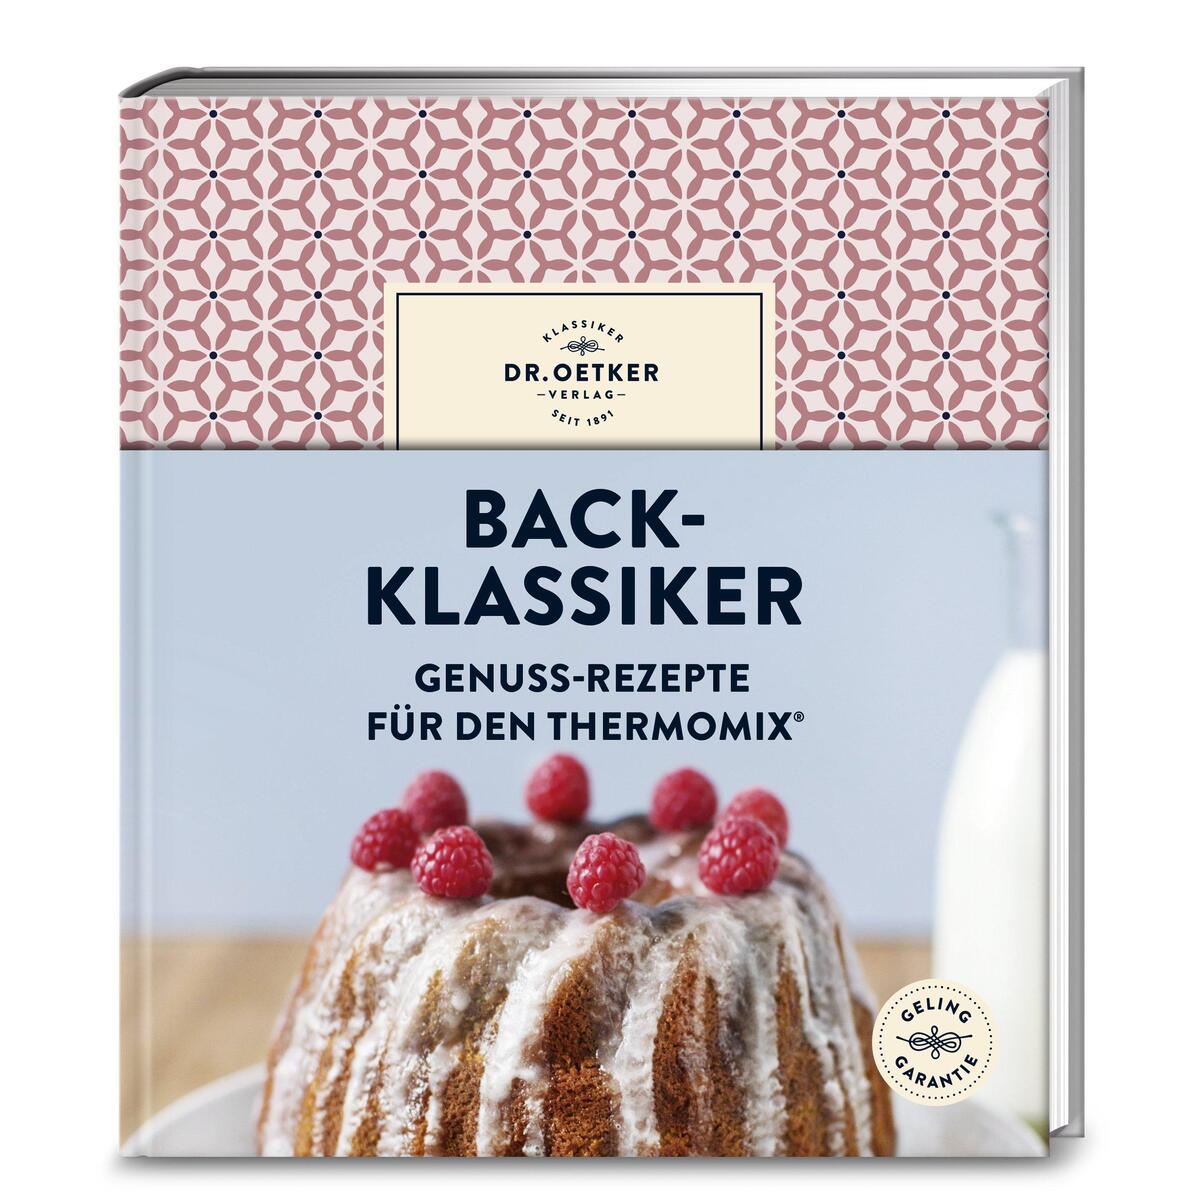 Back-Klassiker von Dr. Oetker Verlag